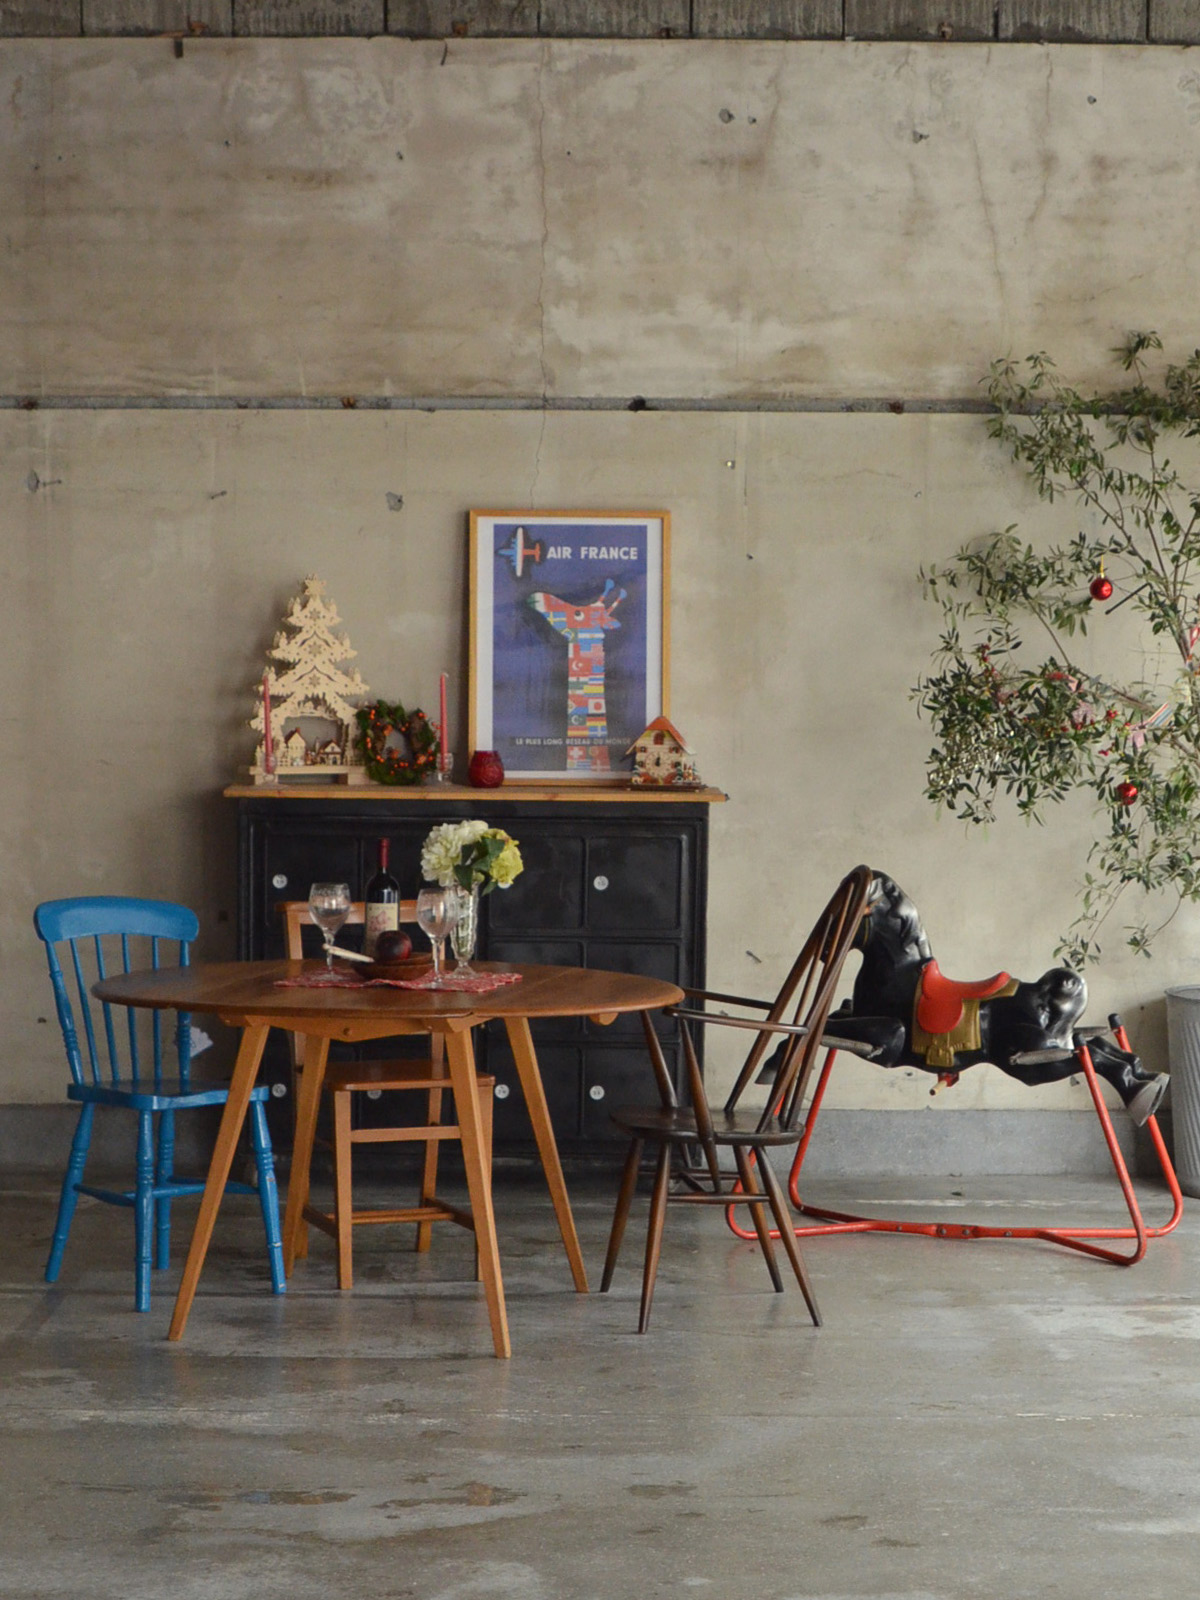 ハンドルスタイルの | クールな家具とぬくもりの家具 2つのコラボが作り出すクリスマス